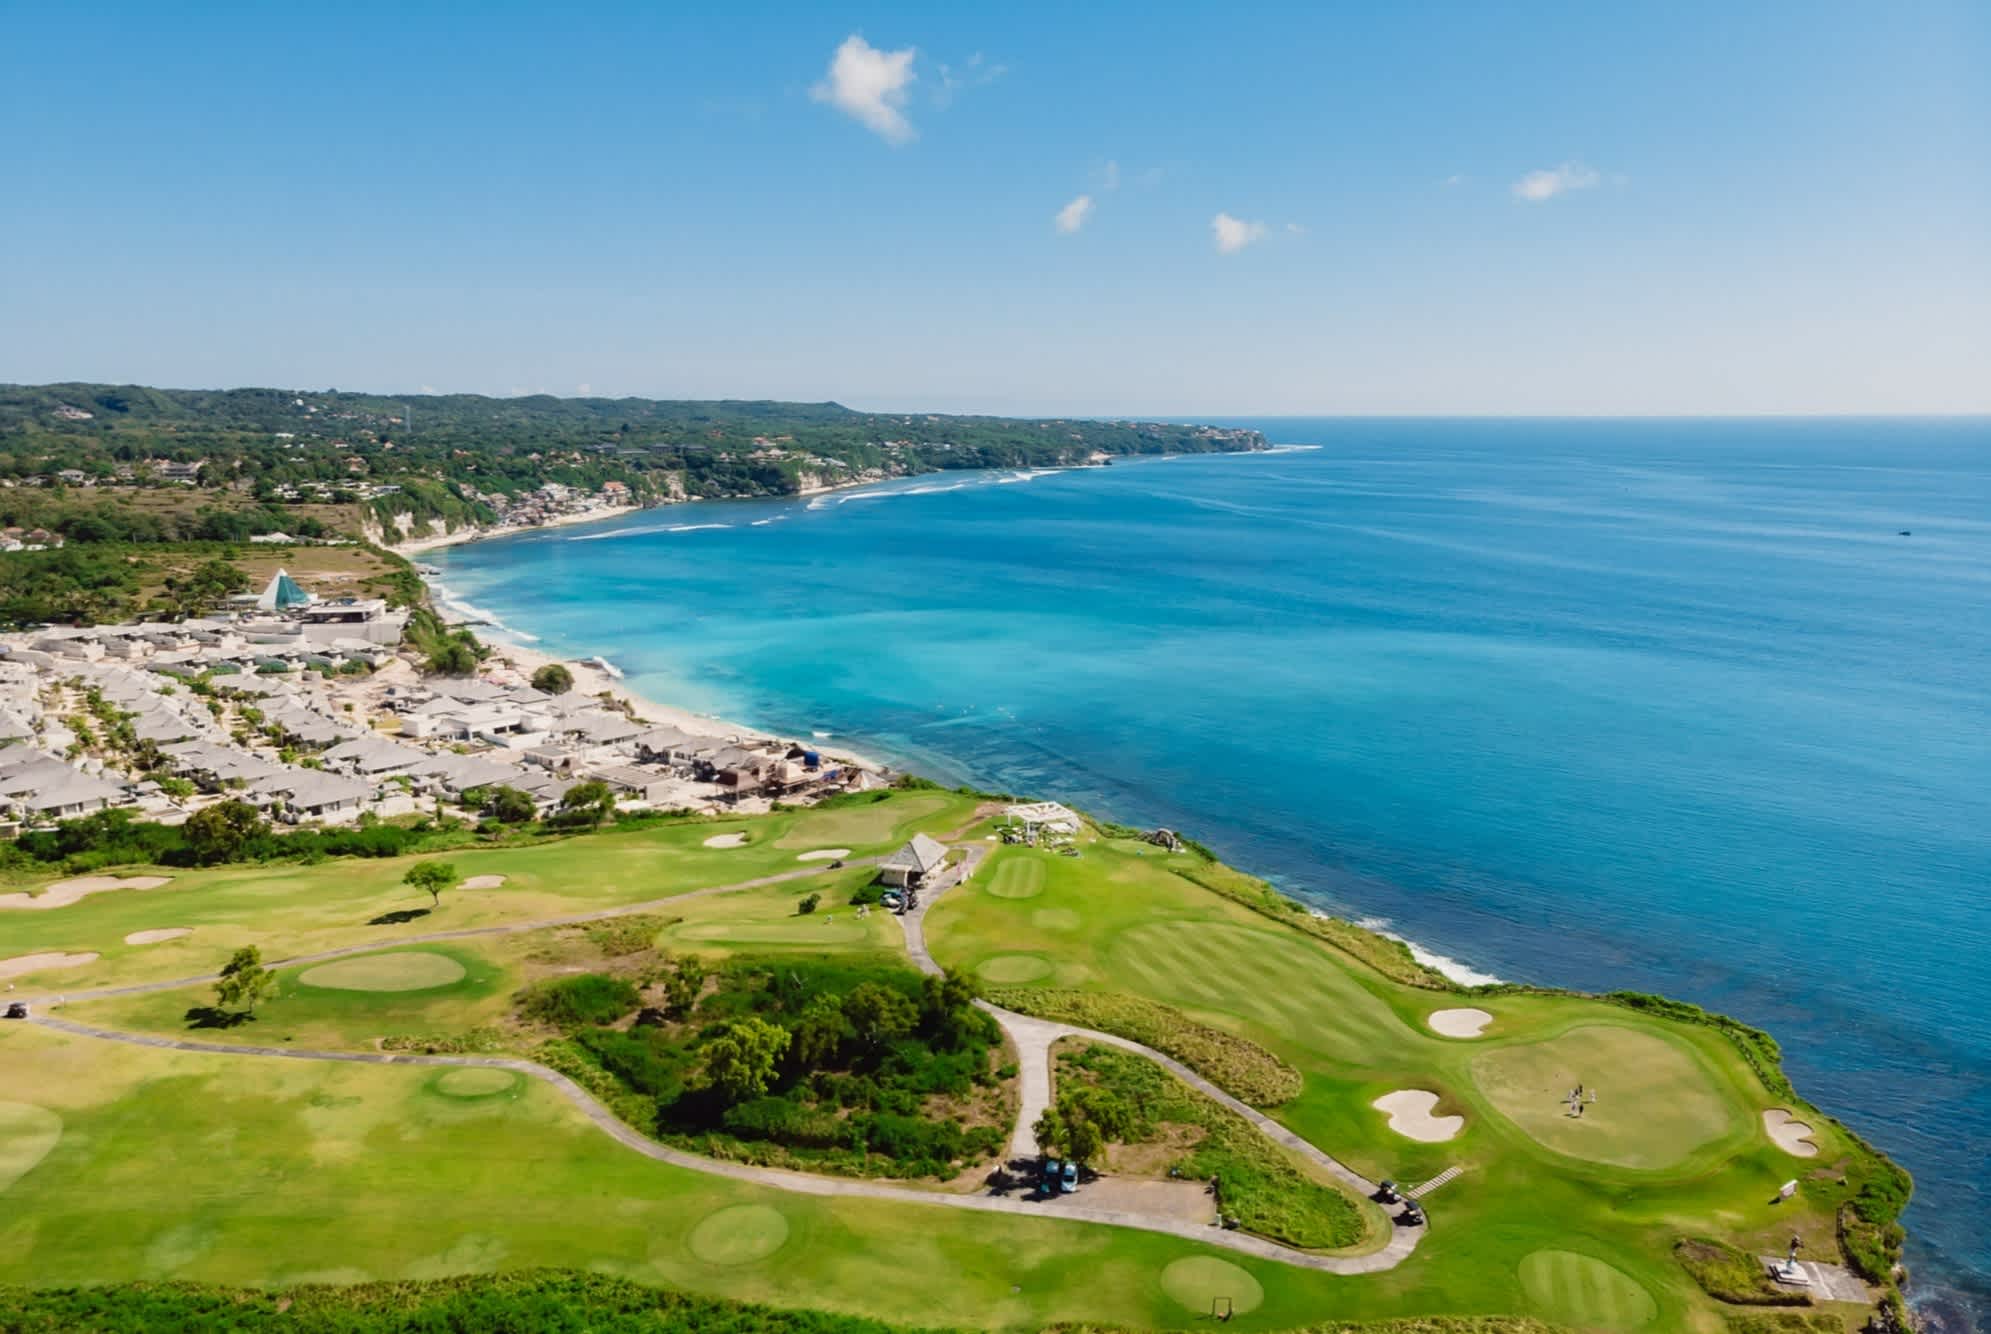 Luftaufnahme des Golfplatzes beim blauen Ozean auf Bali, Indonesien

